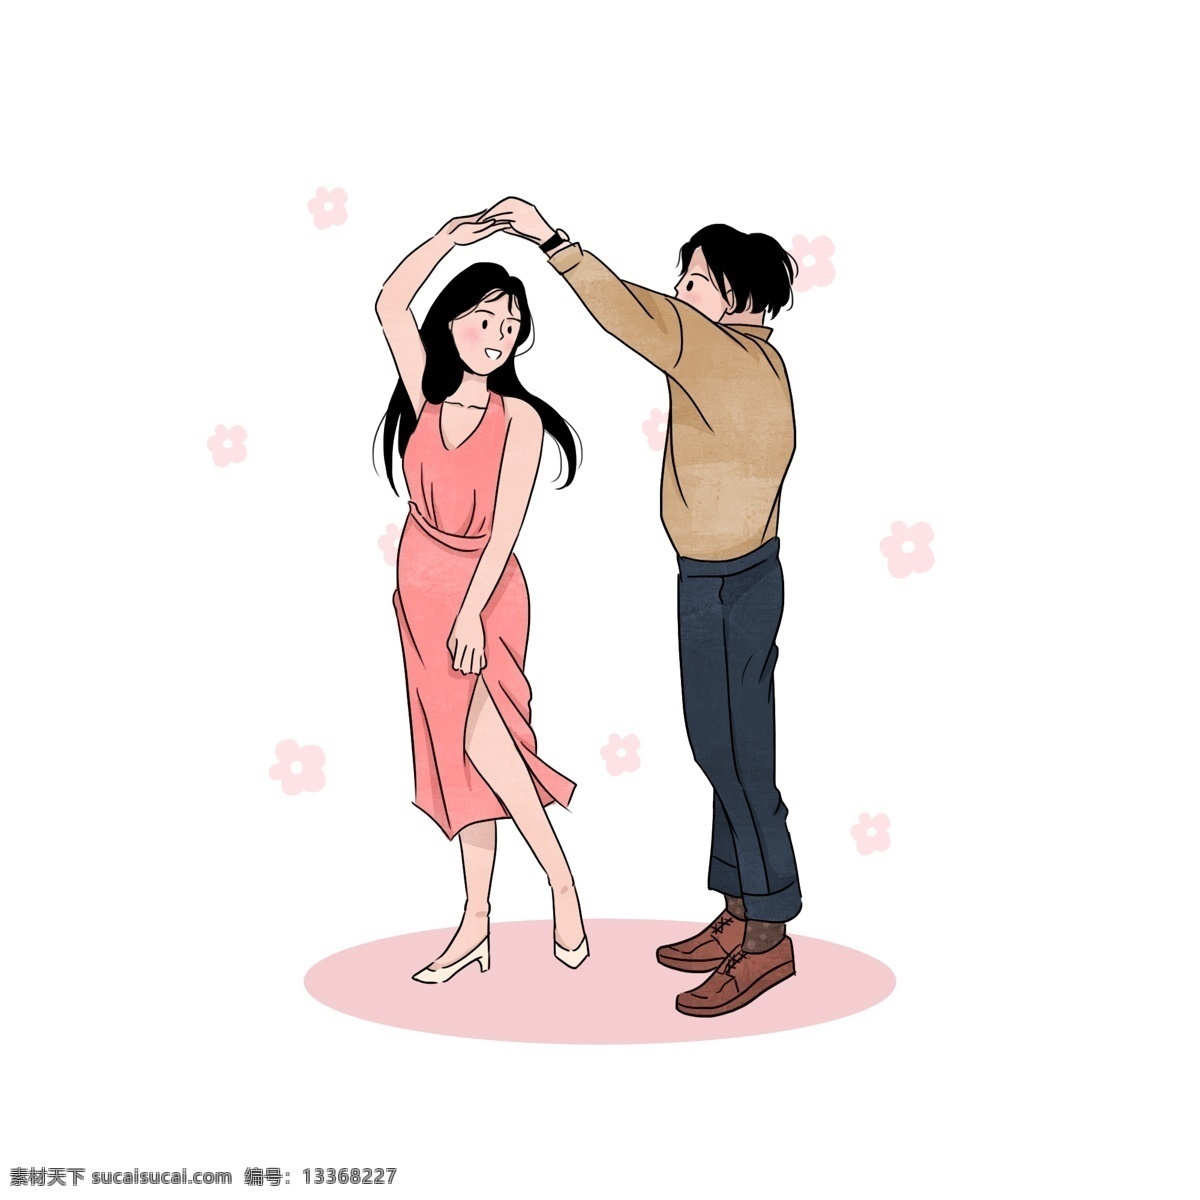 七夕节 一起 跳舞 情侣 元素 爱情 粉色 女孩 夫妻 浪漫 卡通 可爱 手绘风